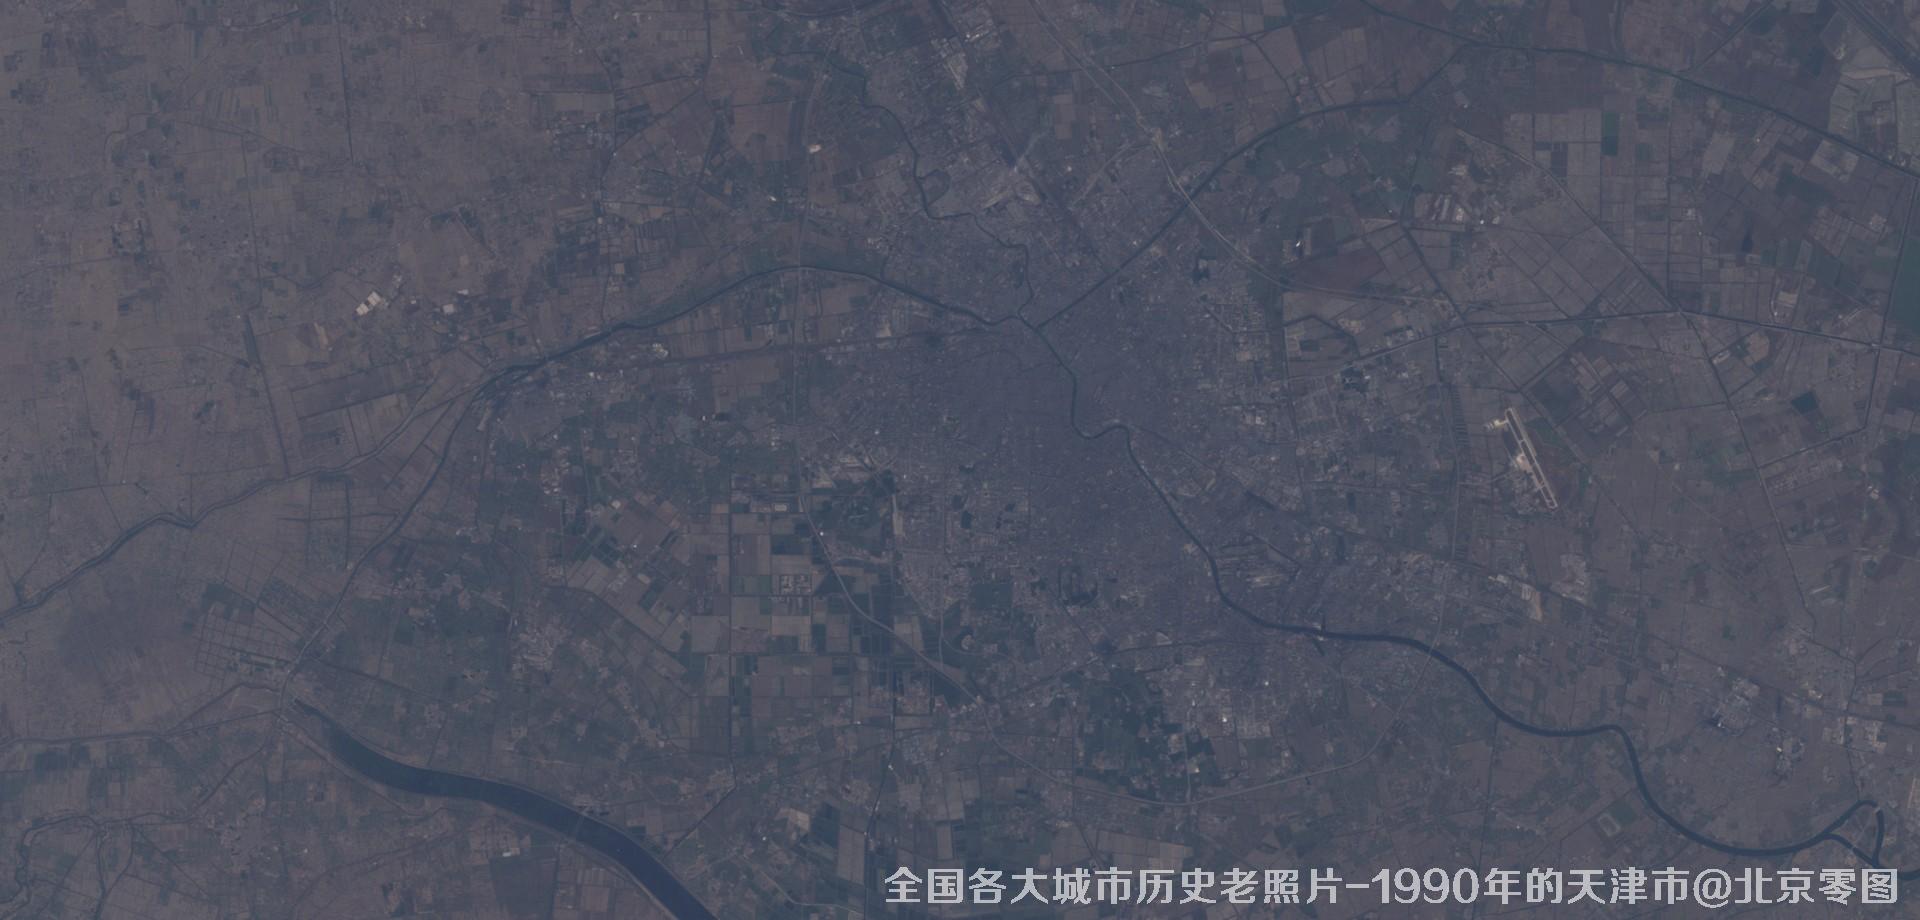 美国Landsat卫星拍摄的1990年的天津市历史卫星影像图